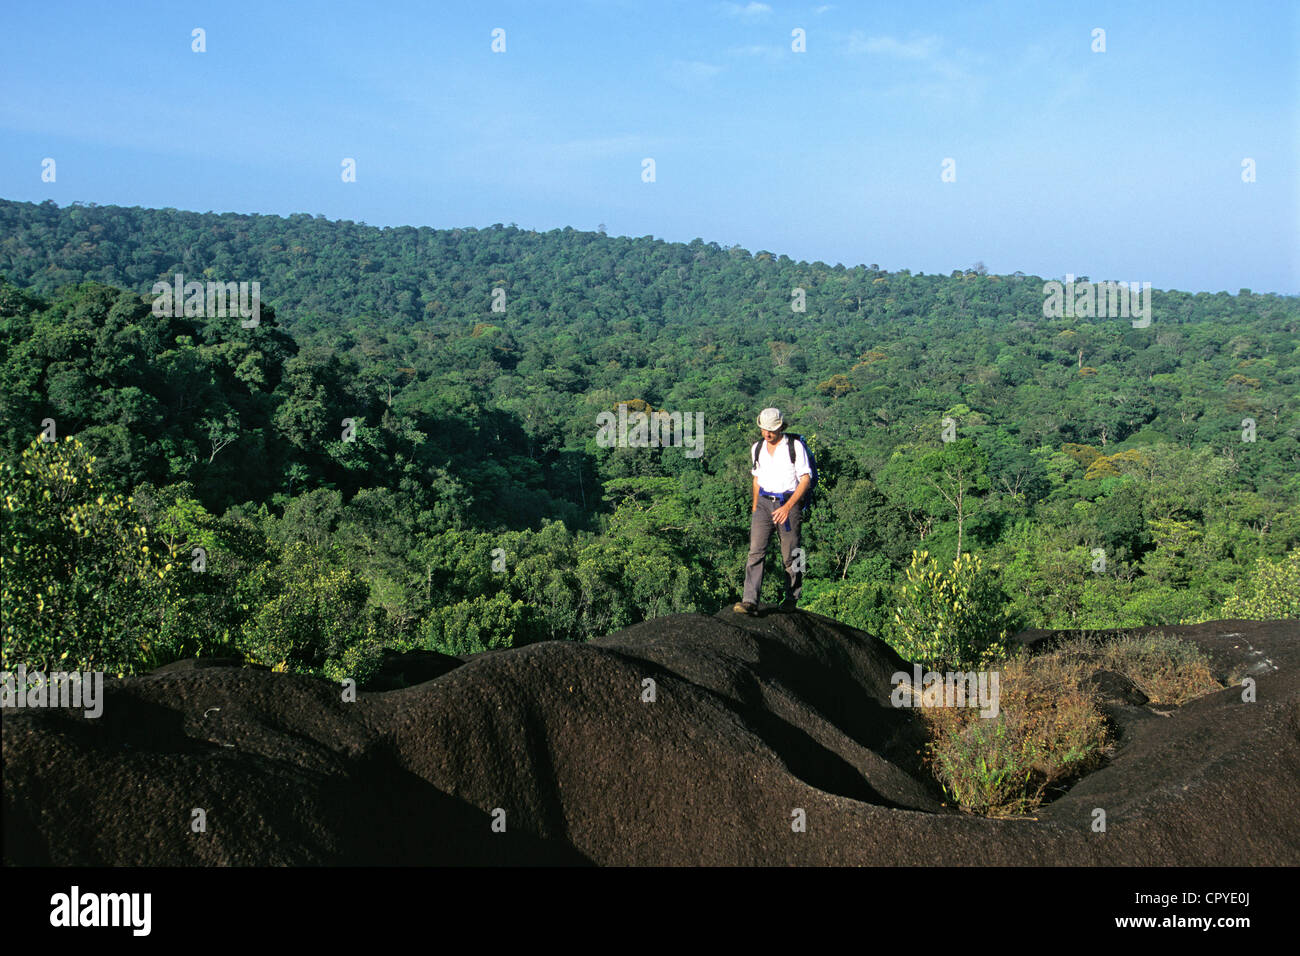 France Guyane département Inselberg ou au-dessus du couvert Monadnock formation de granit en profonde forêt amazonienne Banque D'Images